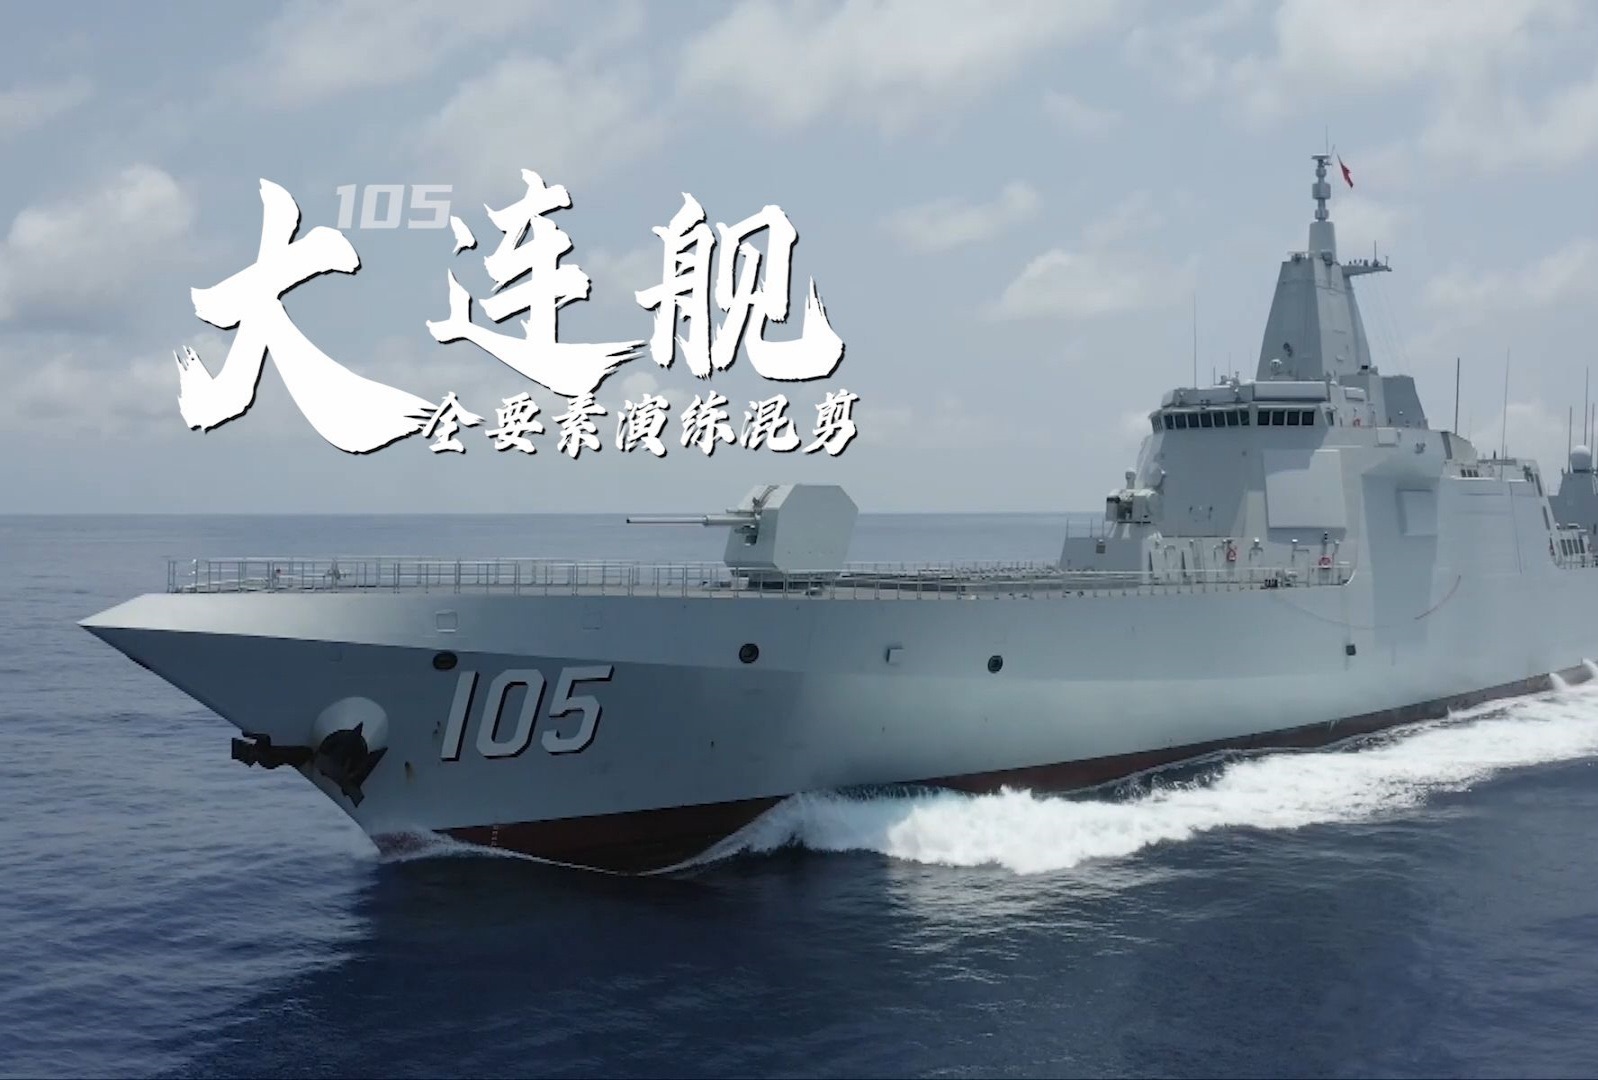 舷号105! 这,就是中国海军大连舰!